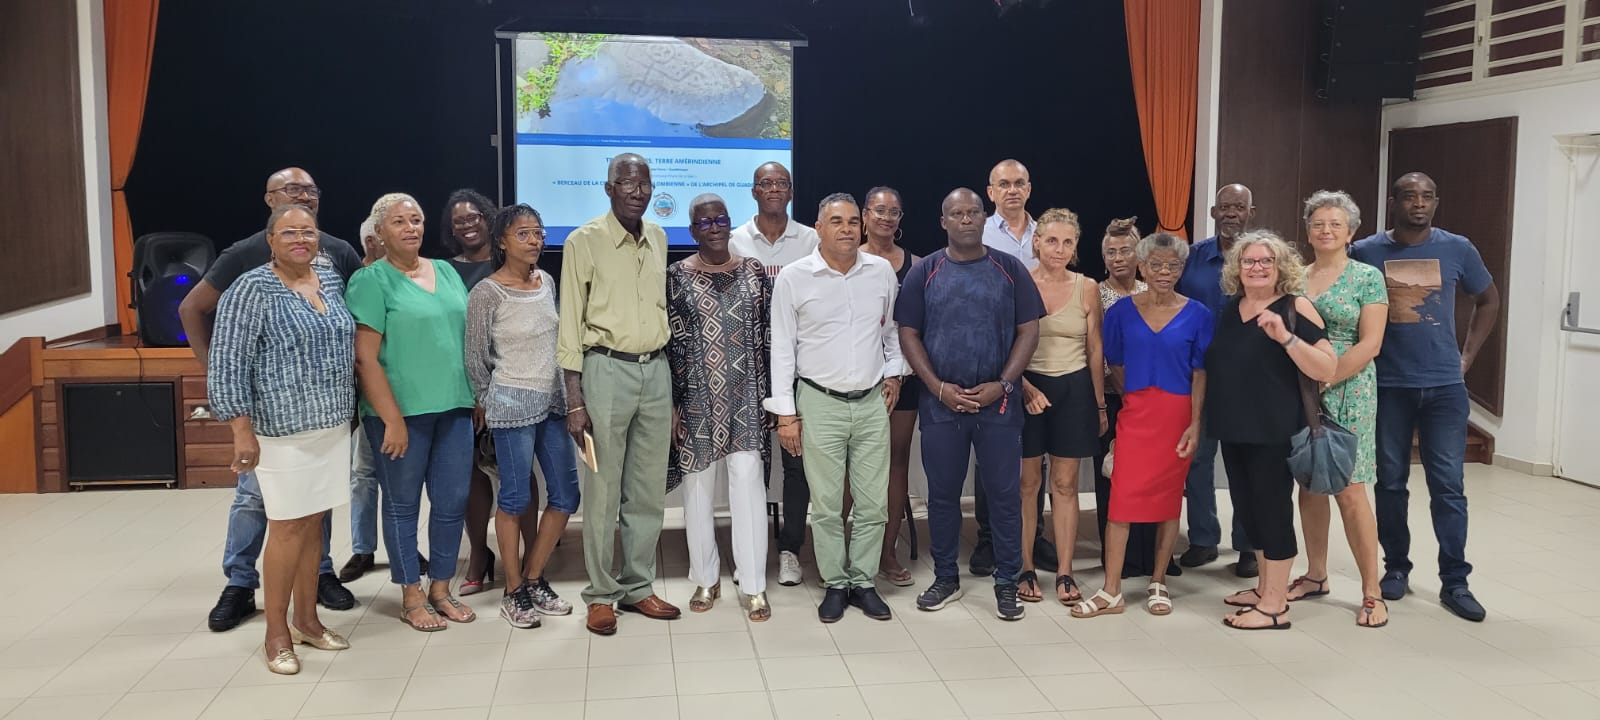 Les entreprises et acteurs du Tourisme Bleu durable ont répondu présents à la présentation « Trois-Rivières, Ville Bleue d’Avenir »